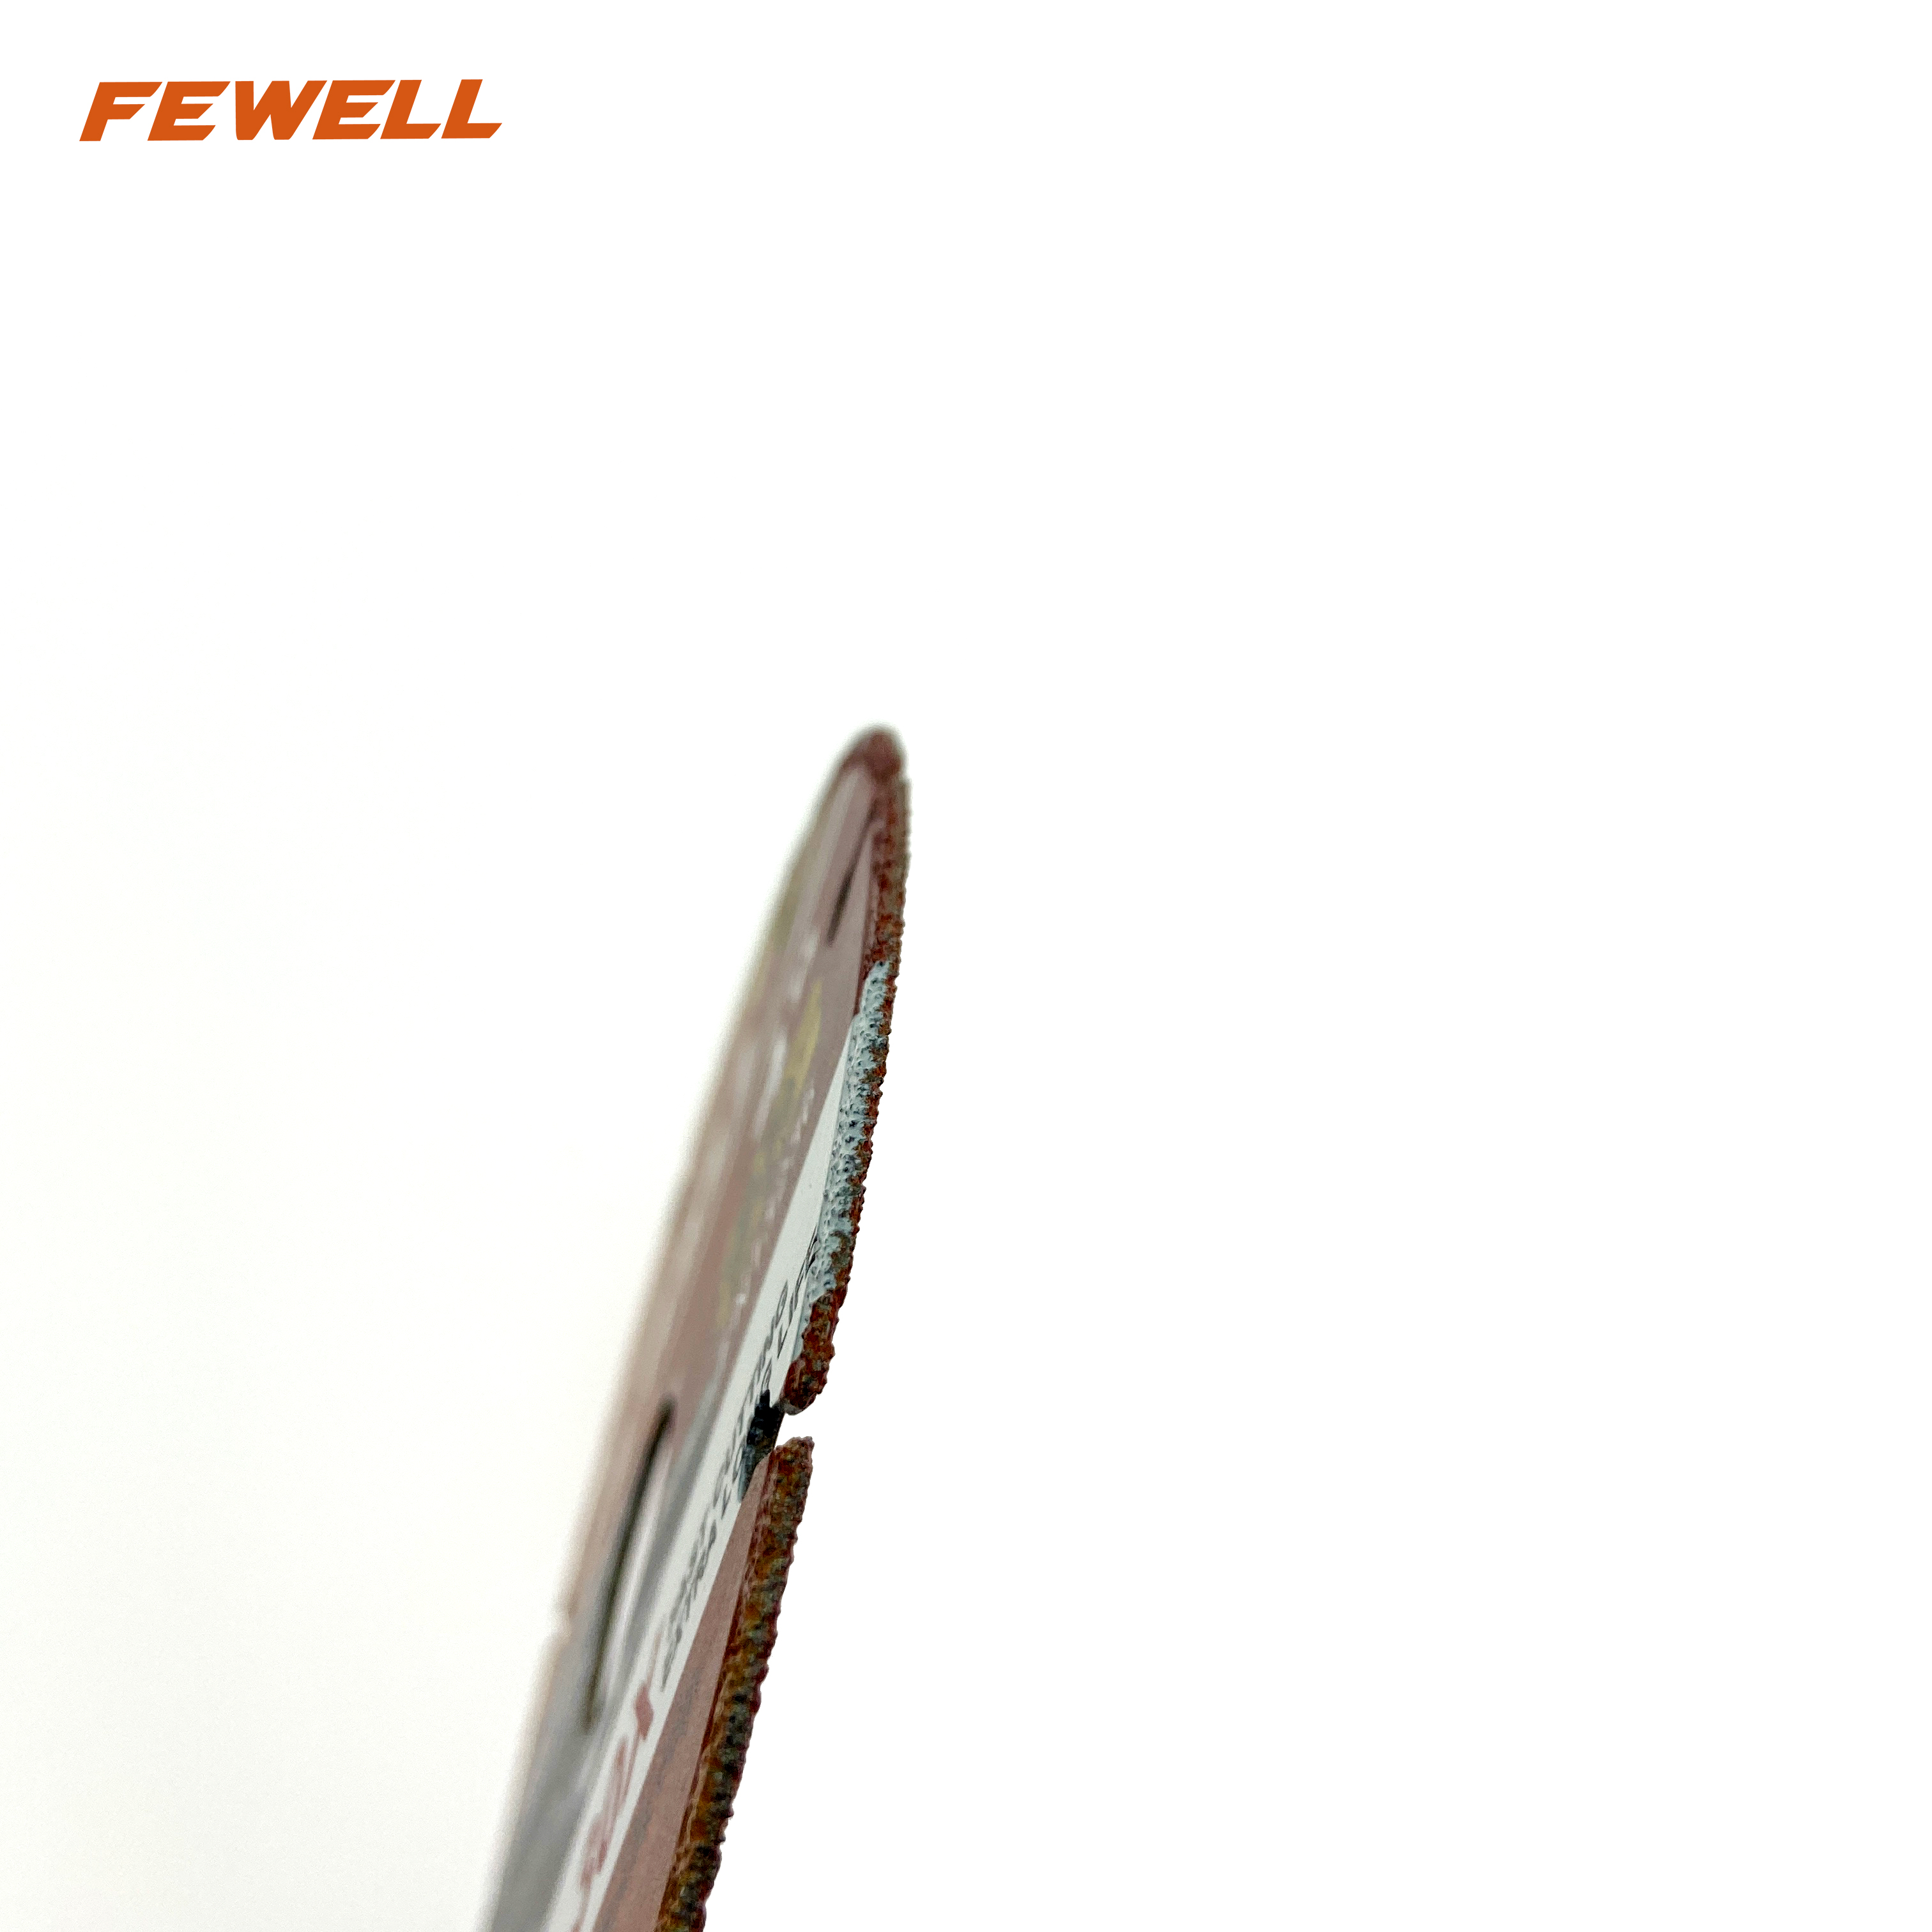 Kuru kesim granit, mermer, tuğla, metal, paslanmaz çelik için vakum lehimli segmentli 4 inç 105 * 1.4 * 20mm elmas bıçak